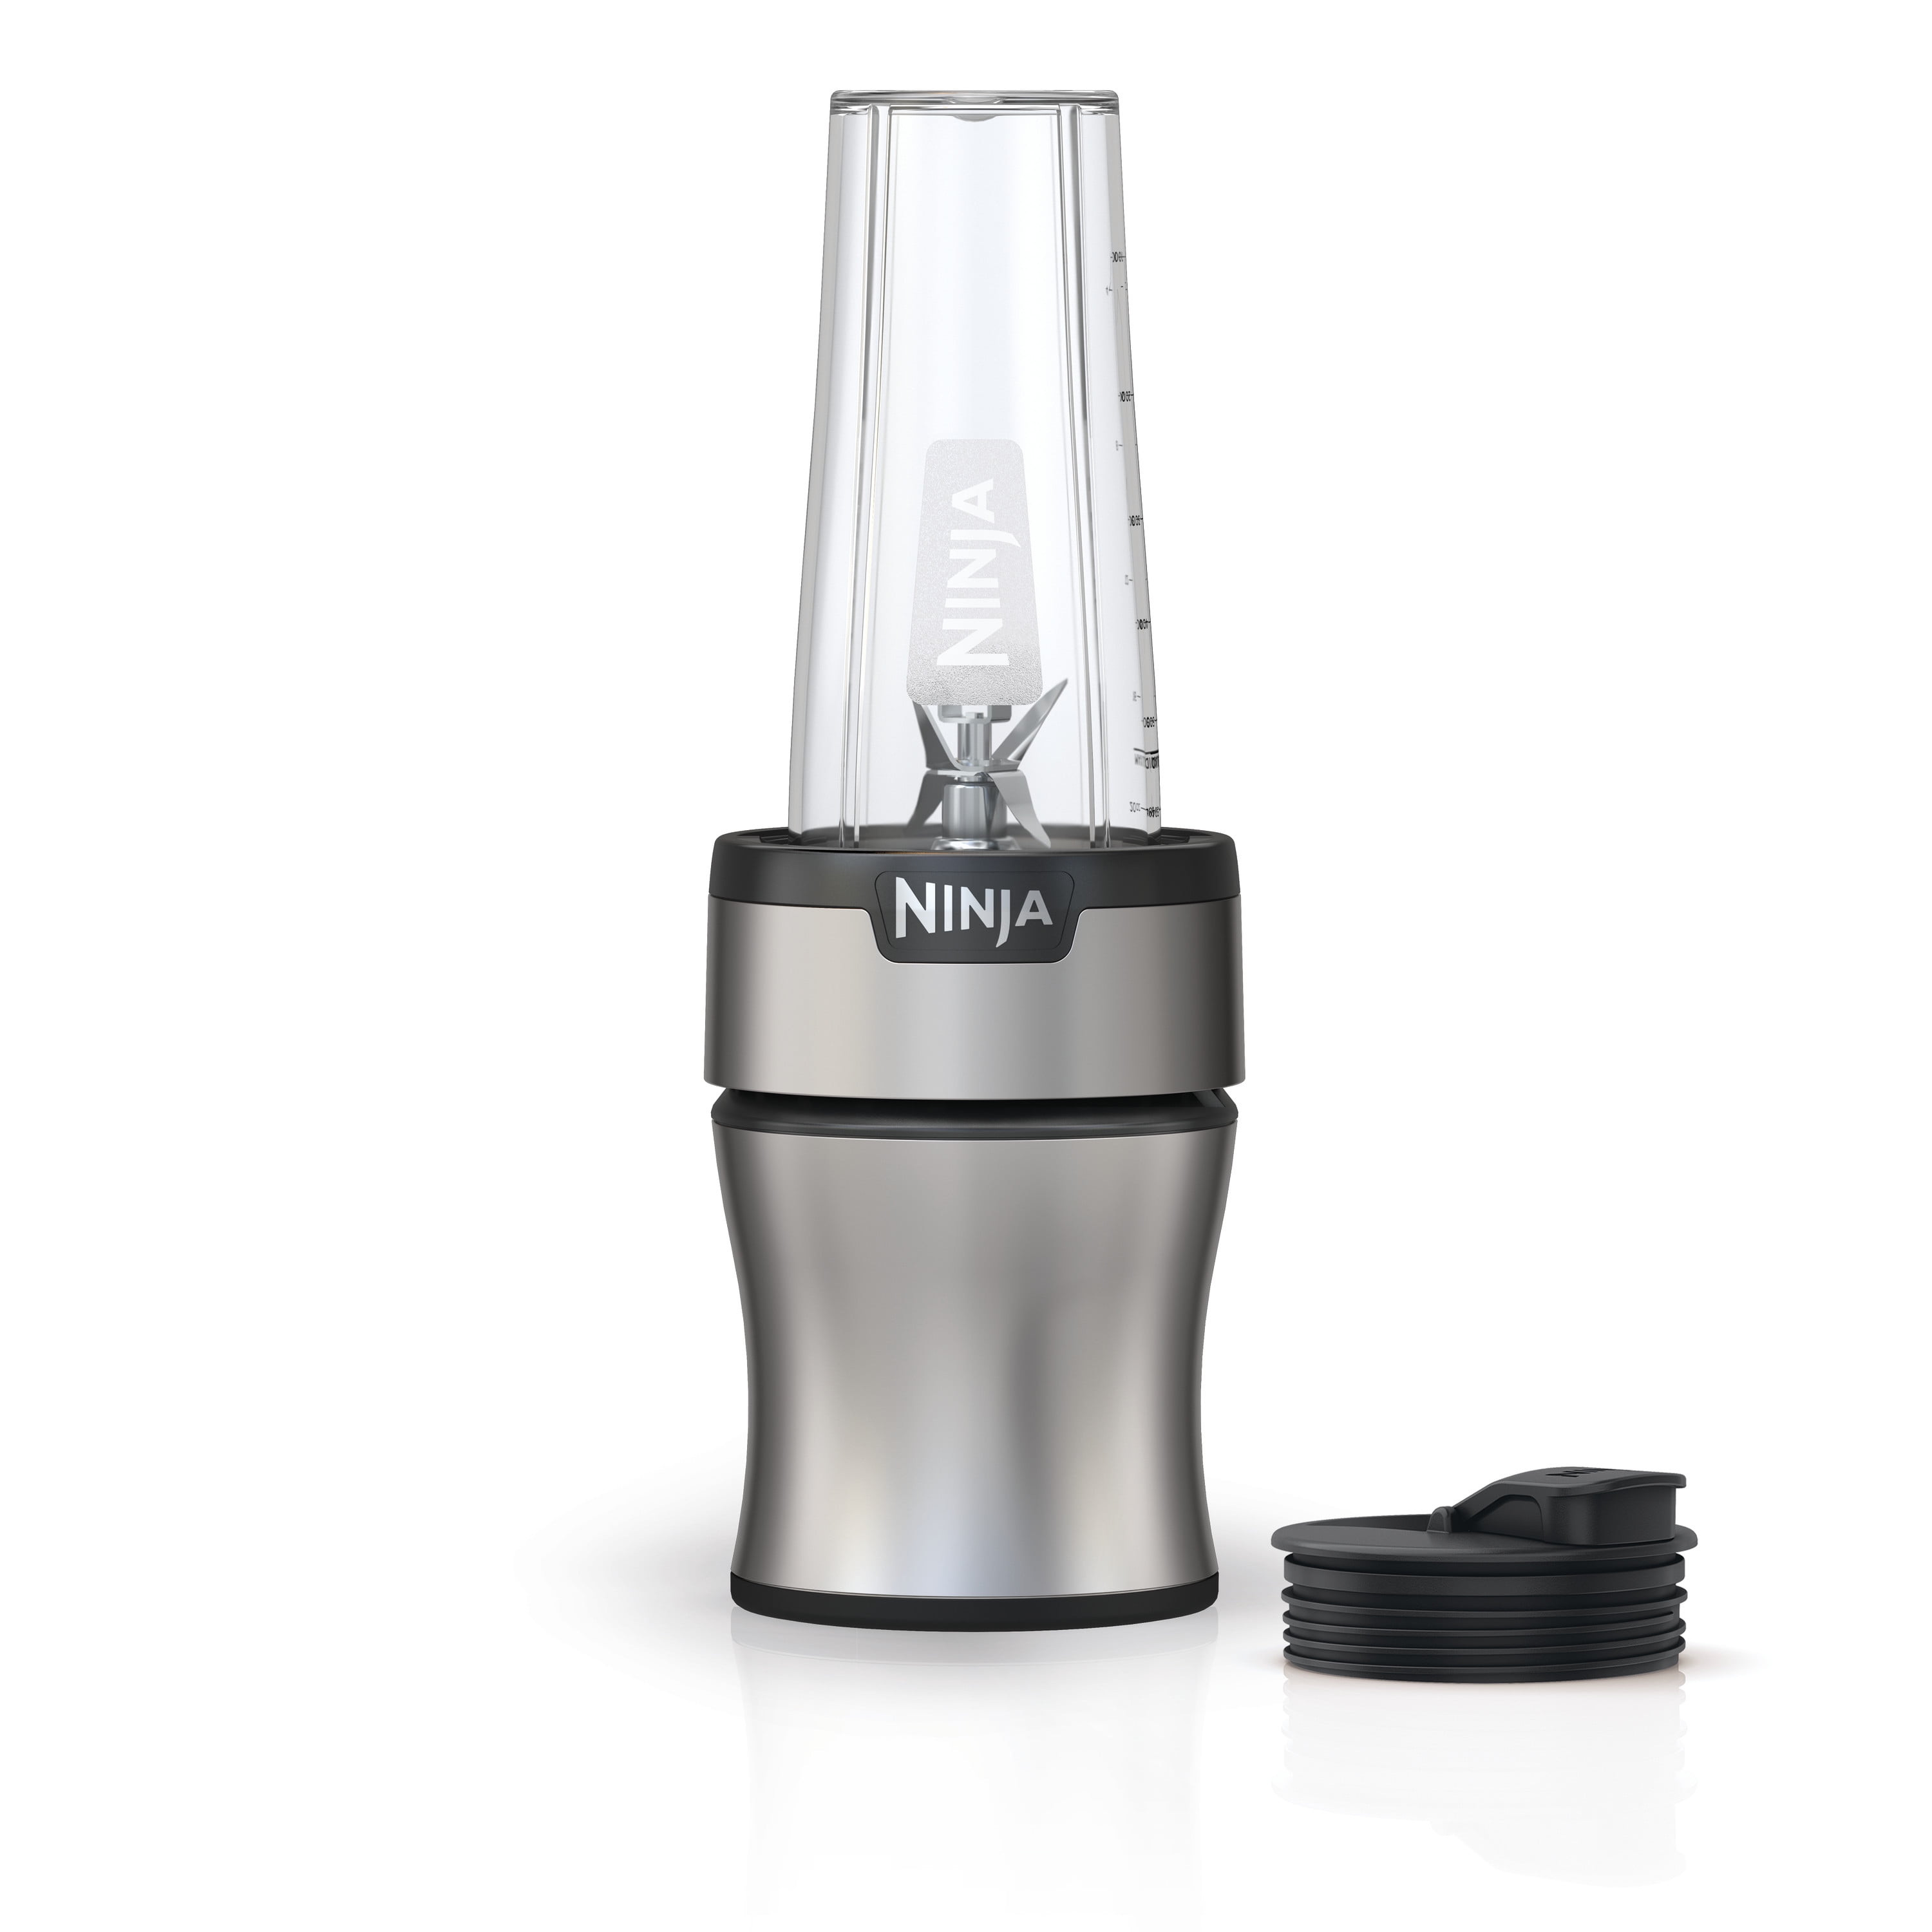 Best blender deal: Save 25% on the Ninja Nutri-Blender 600 at Walmart